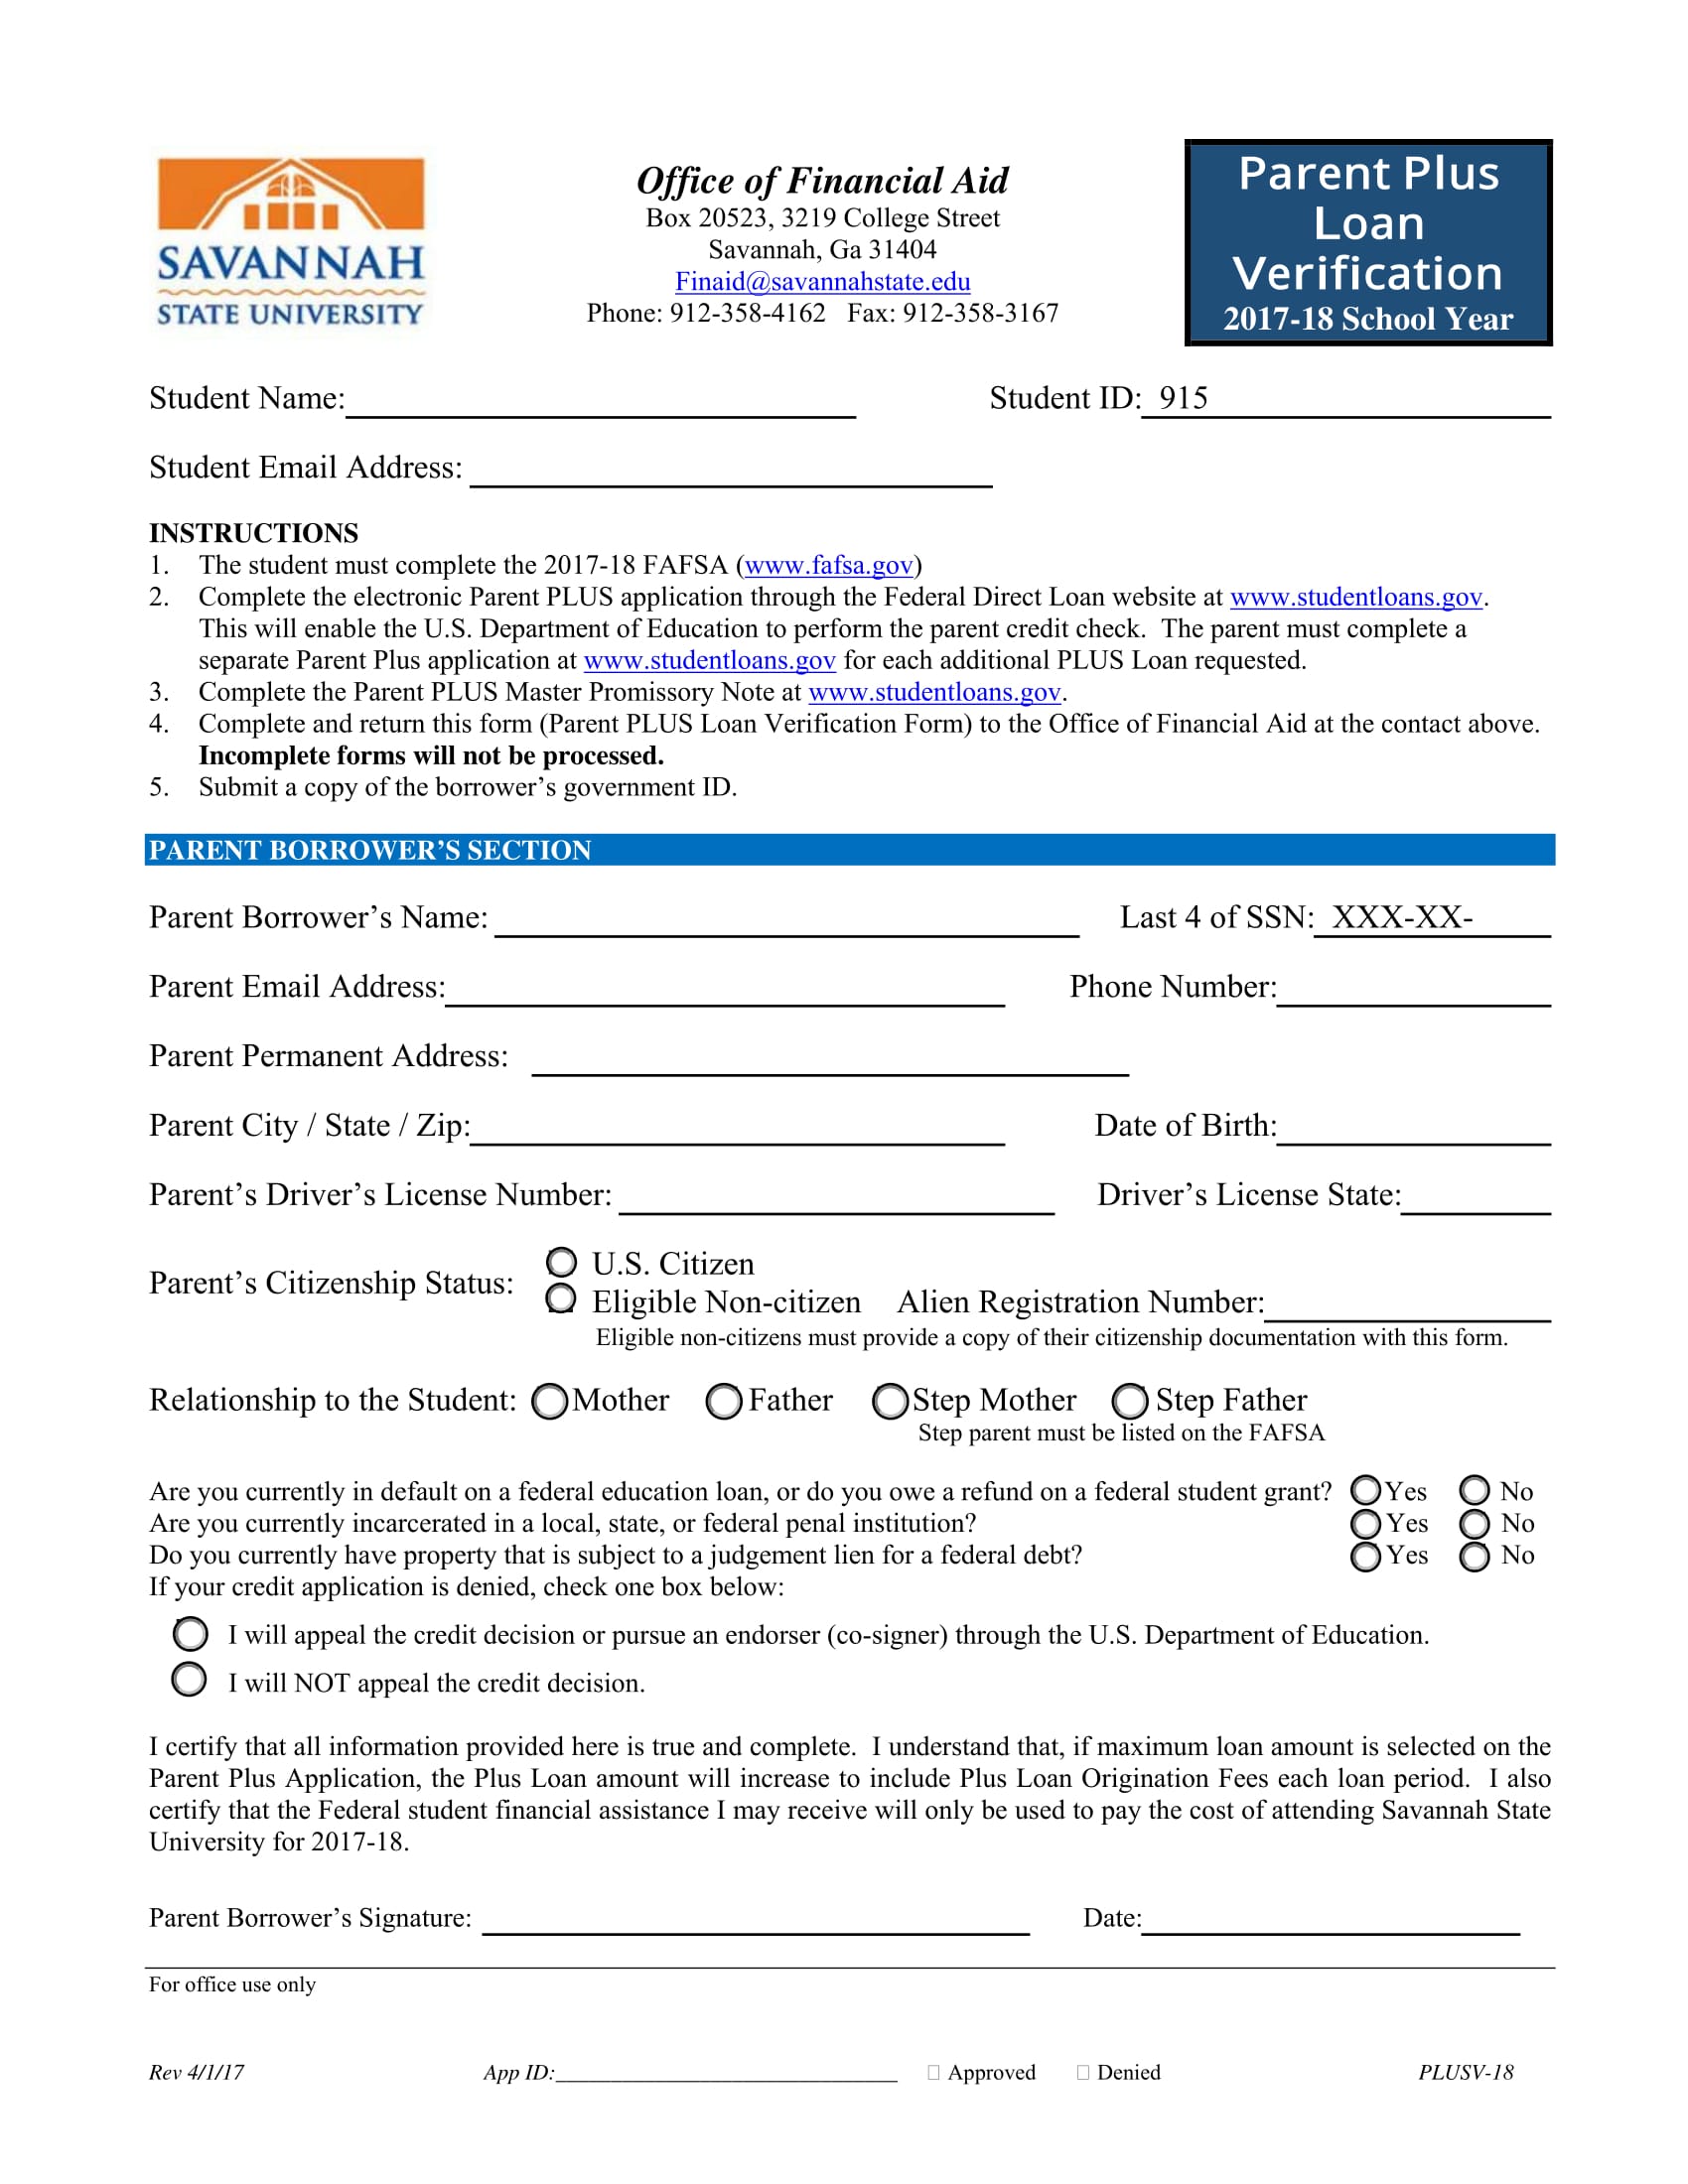 parent plus loan verification form 1